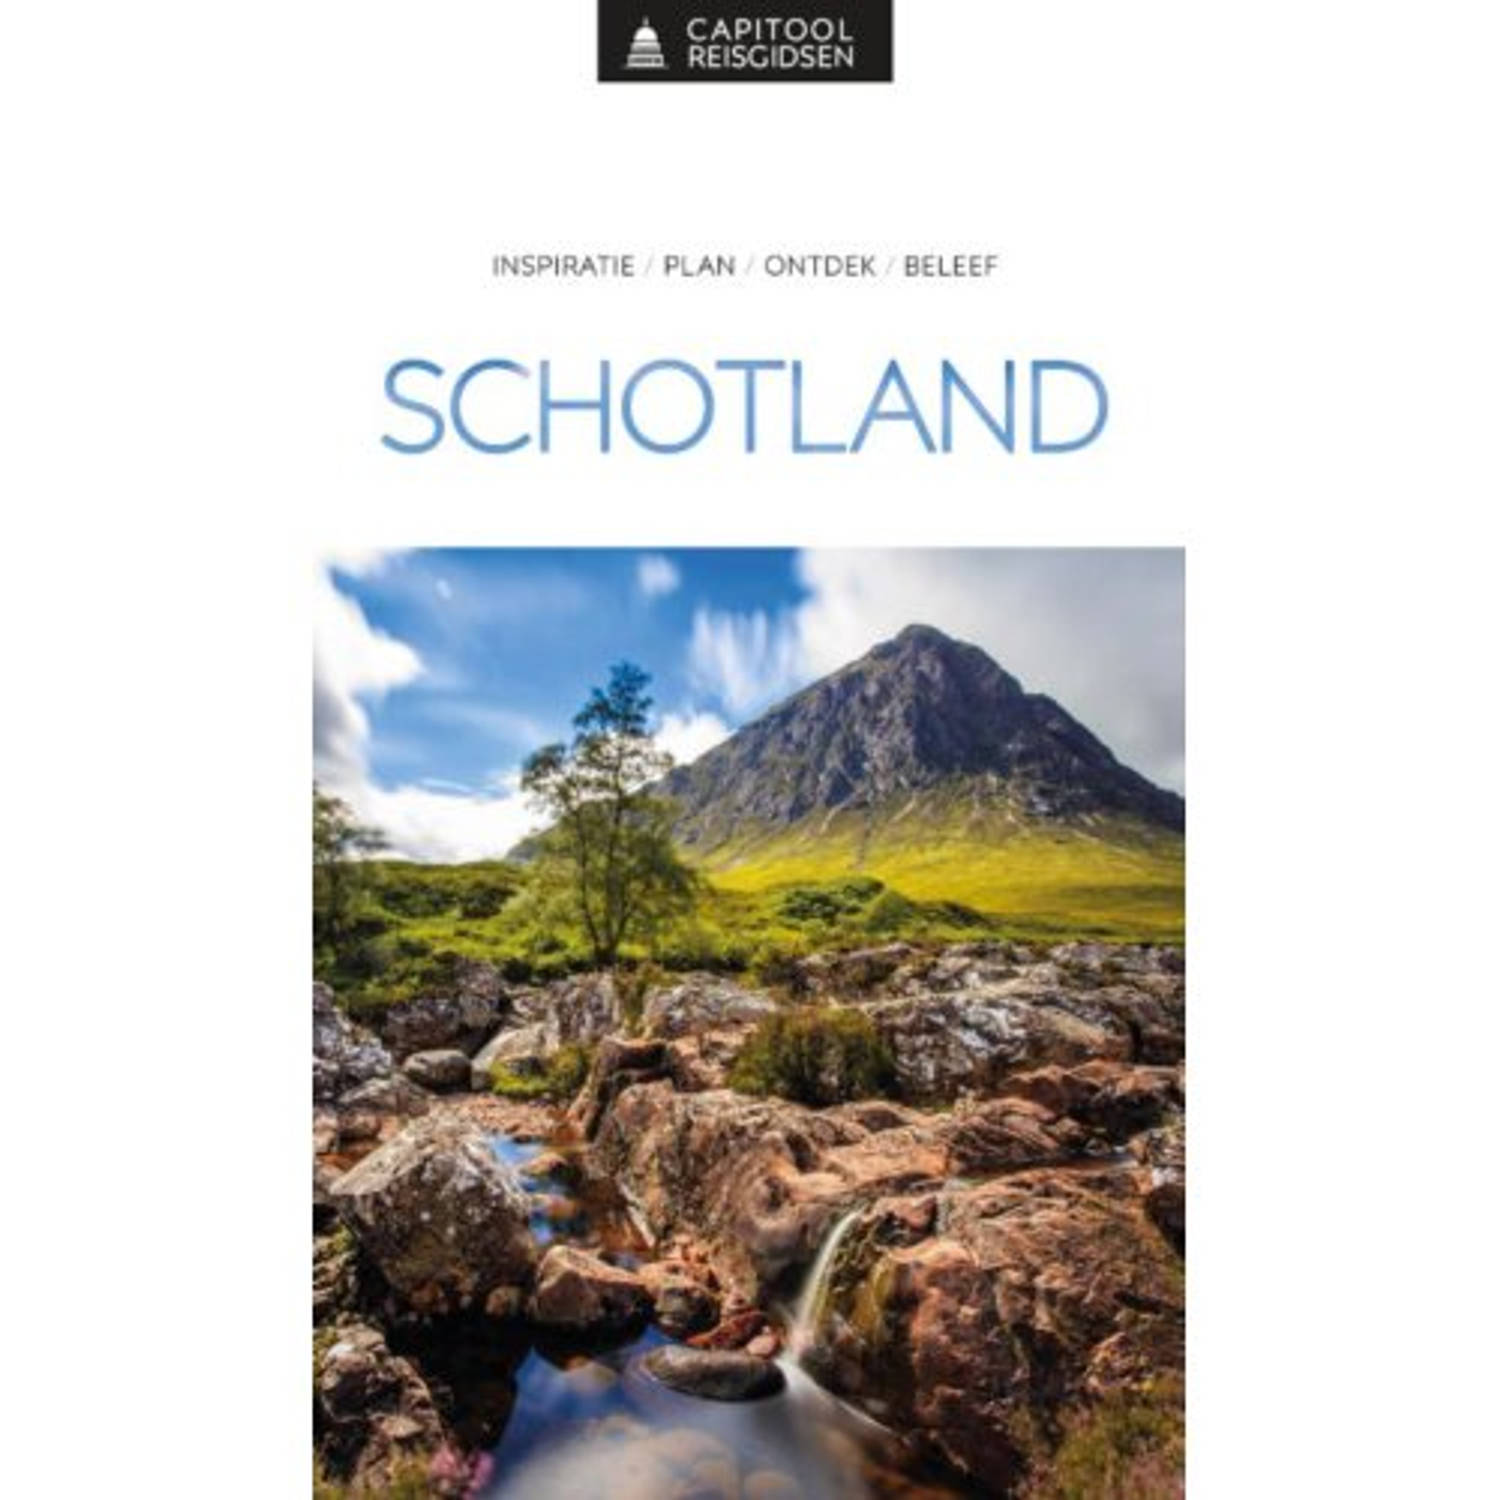 Schotland - Capitool Reisgidsen